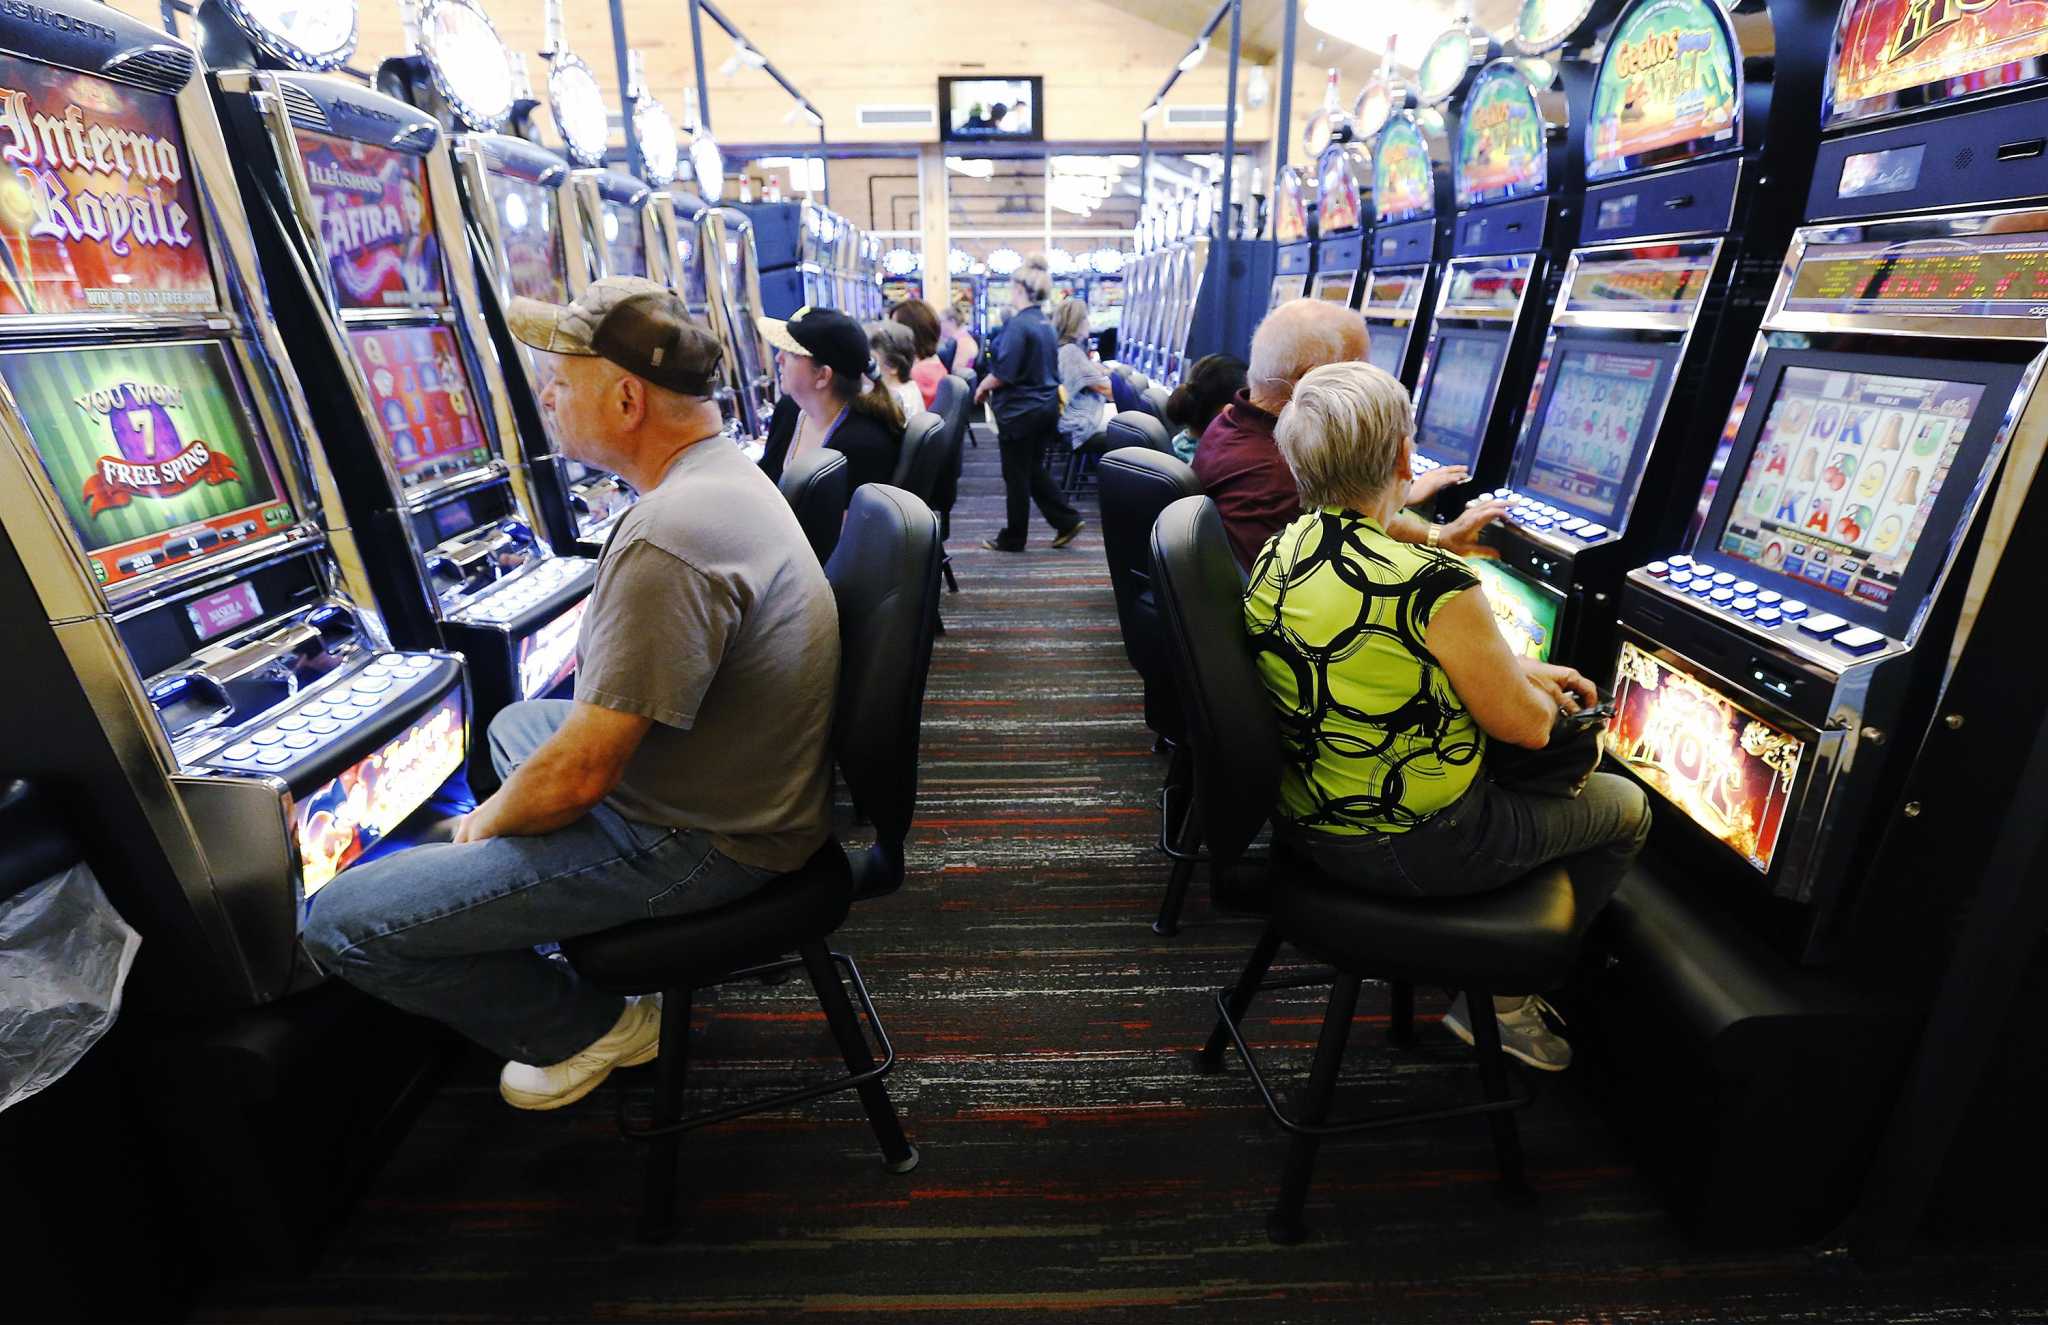 Mascots - Gaming and Gambling Casinos - LibGuides at Navajo